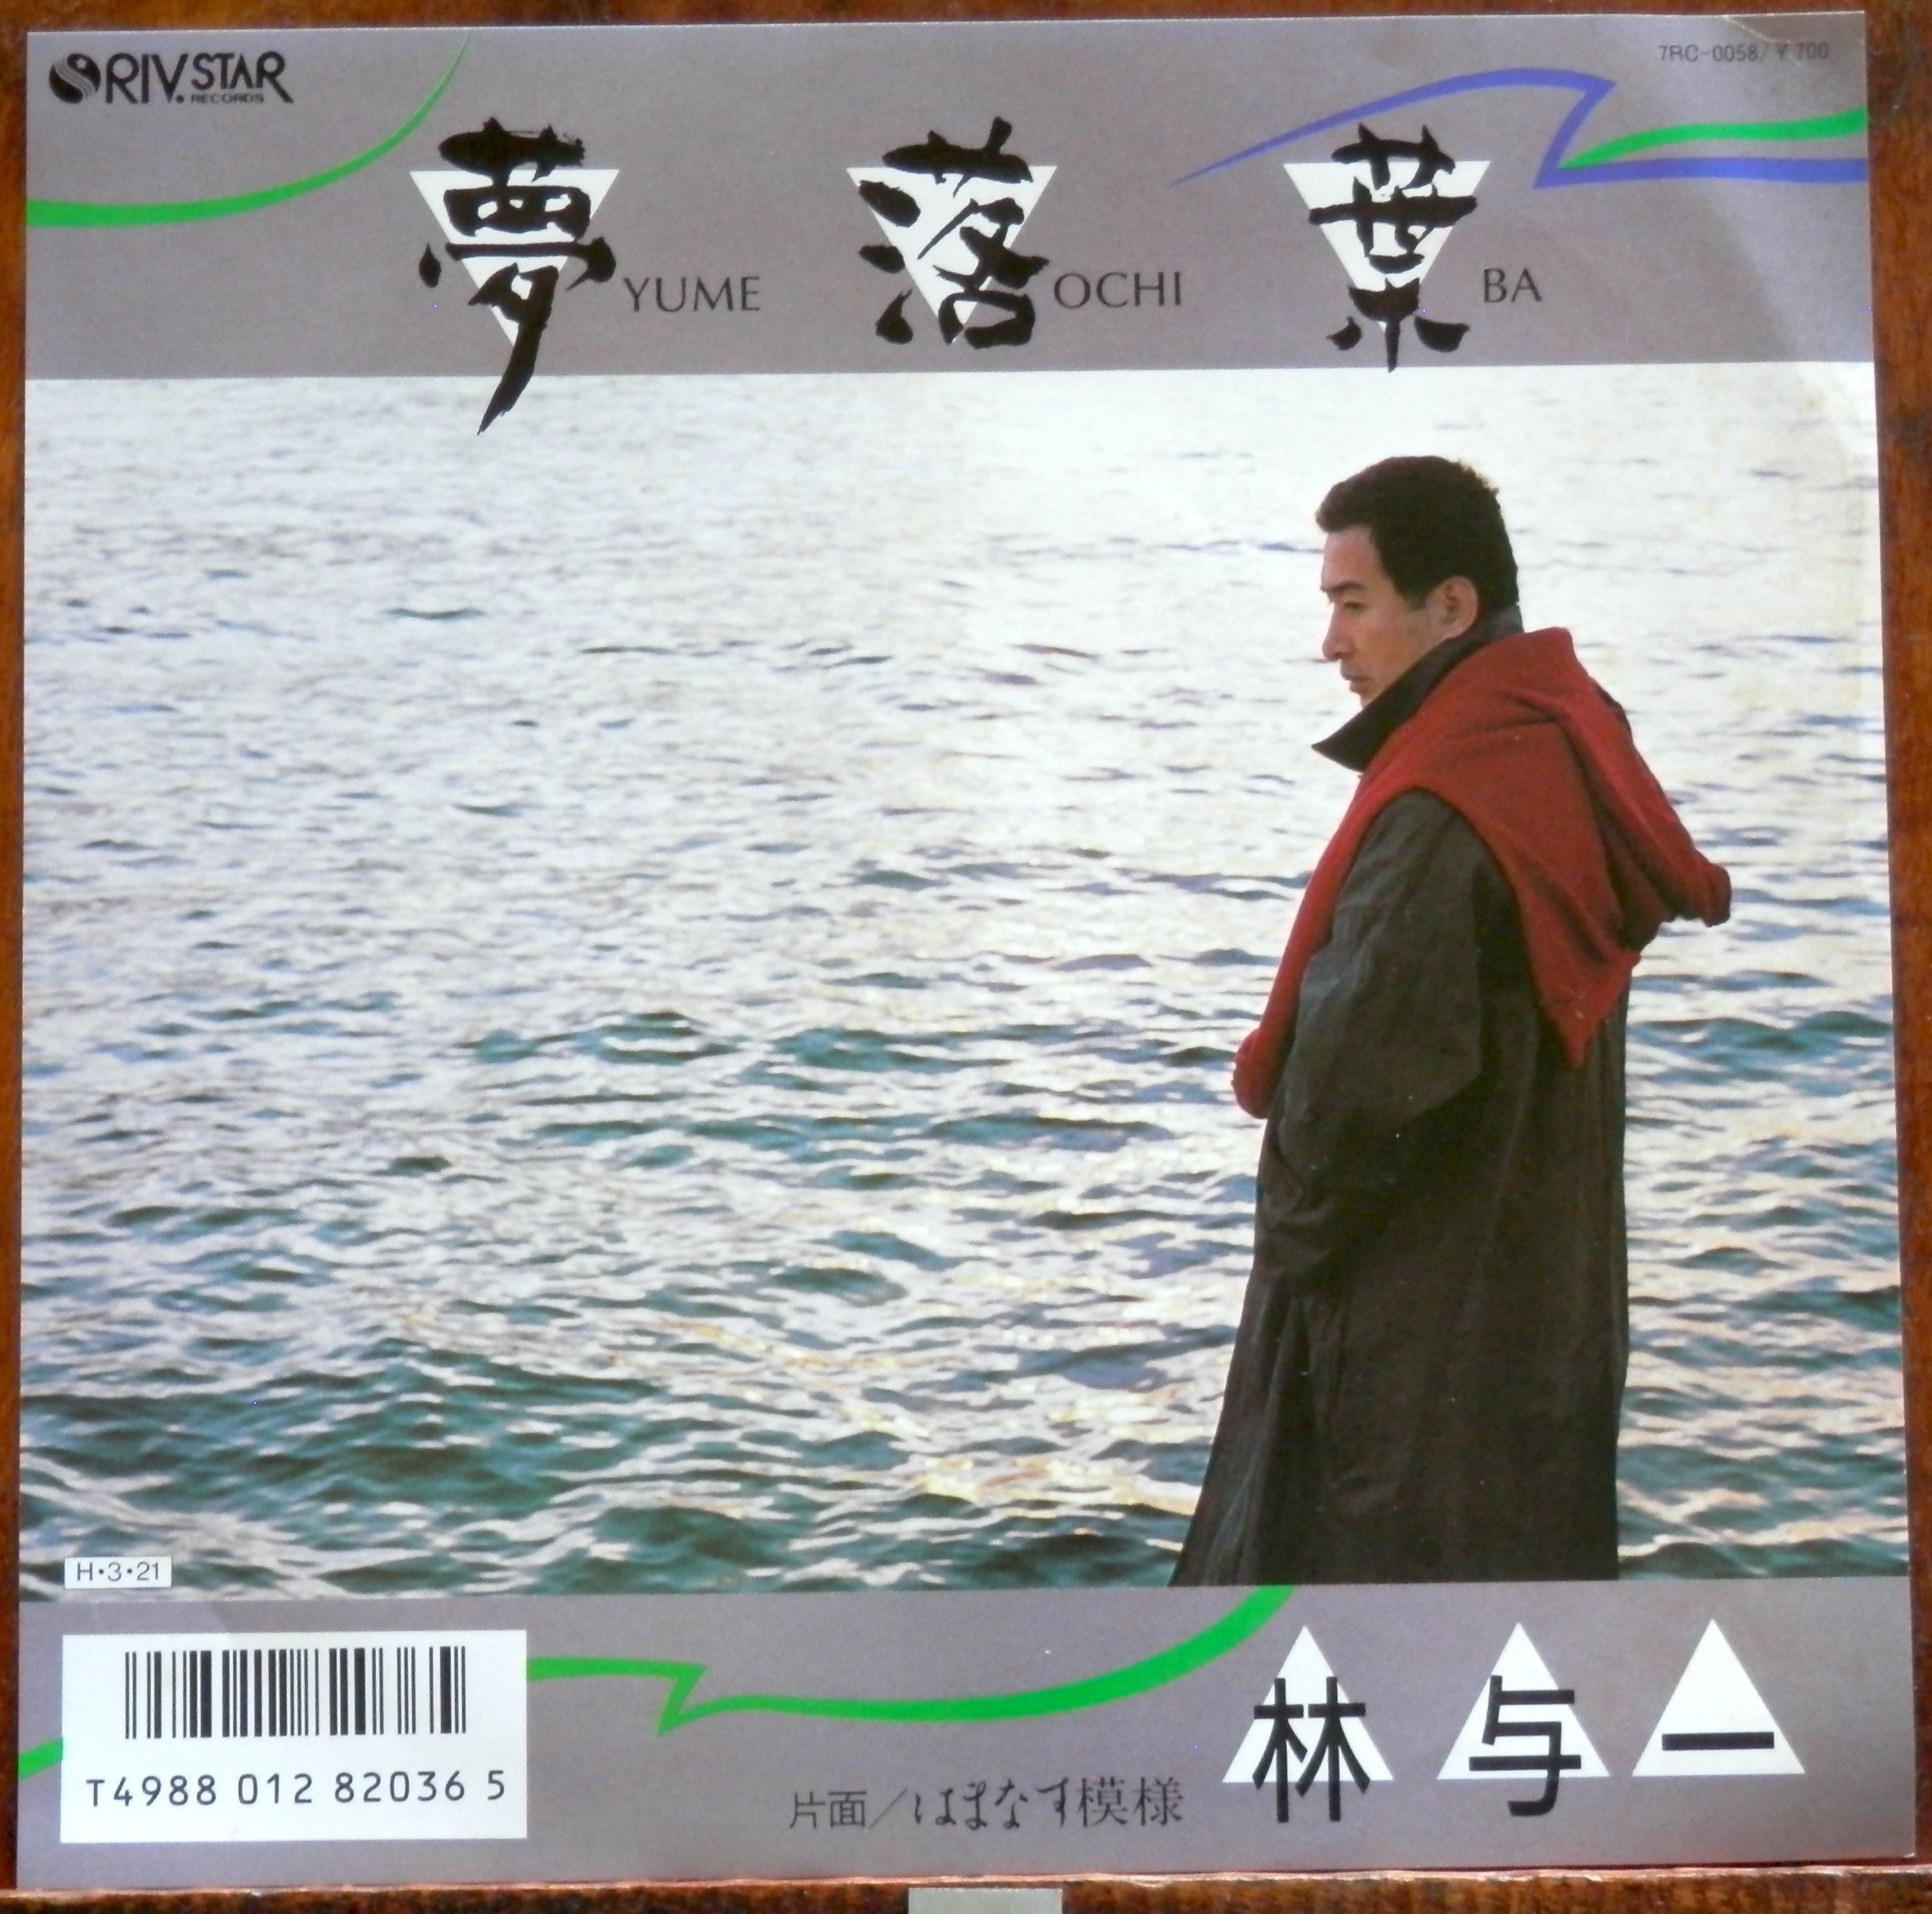 86【EP】林与一 夢落葉 音盤窟レコード